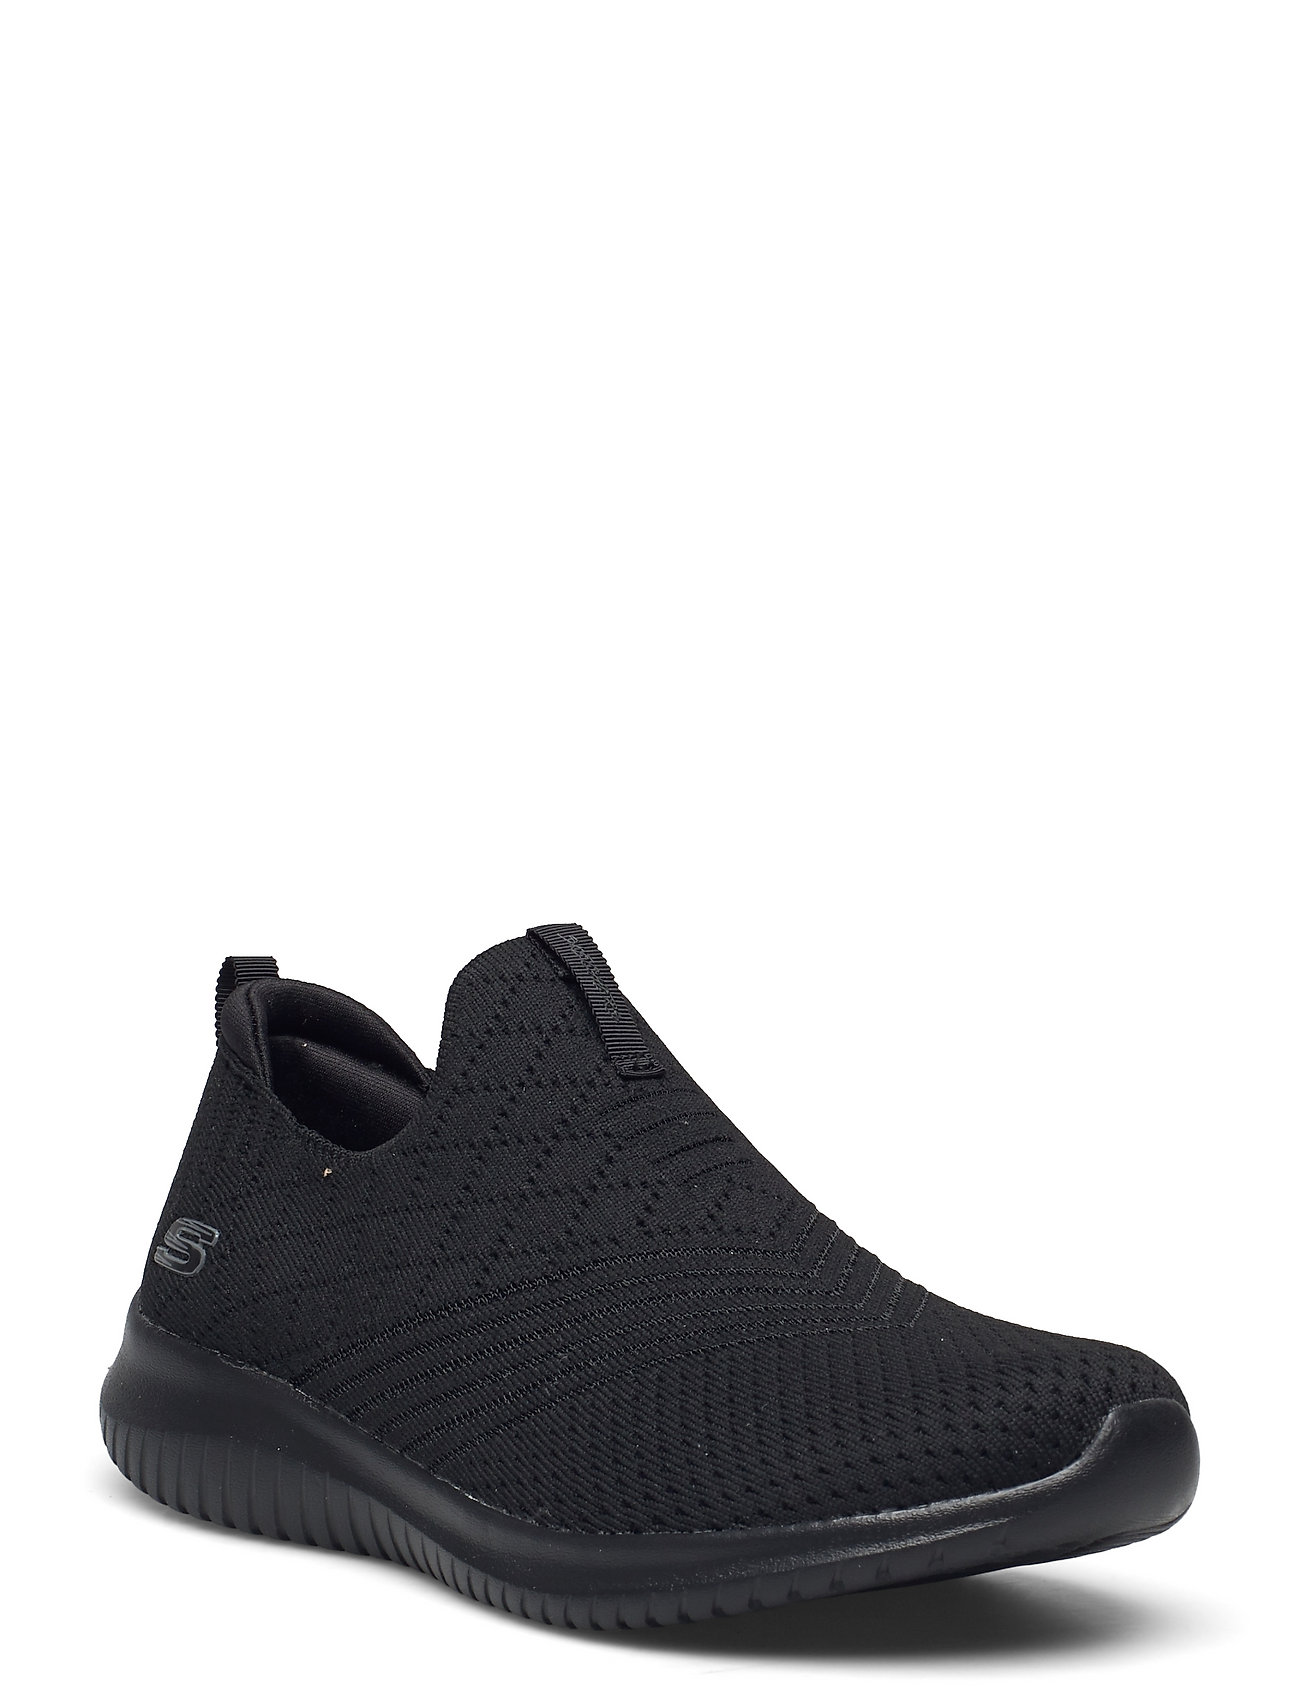 Skechers GOwalk Arch Fit Iconic Slip-On Sneaker Free Shipping DSW ...